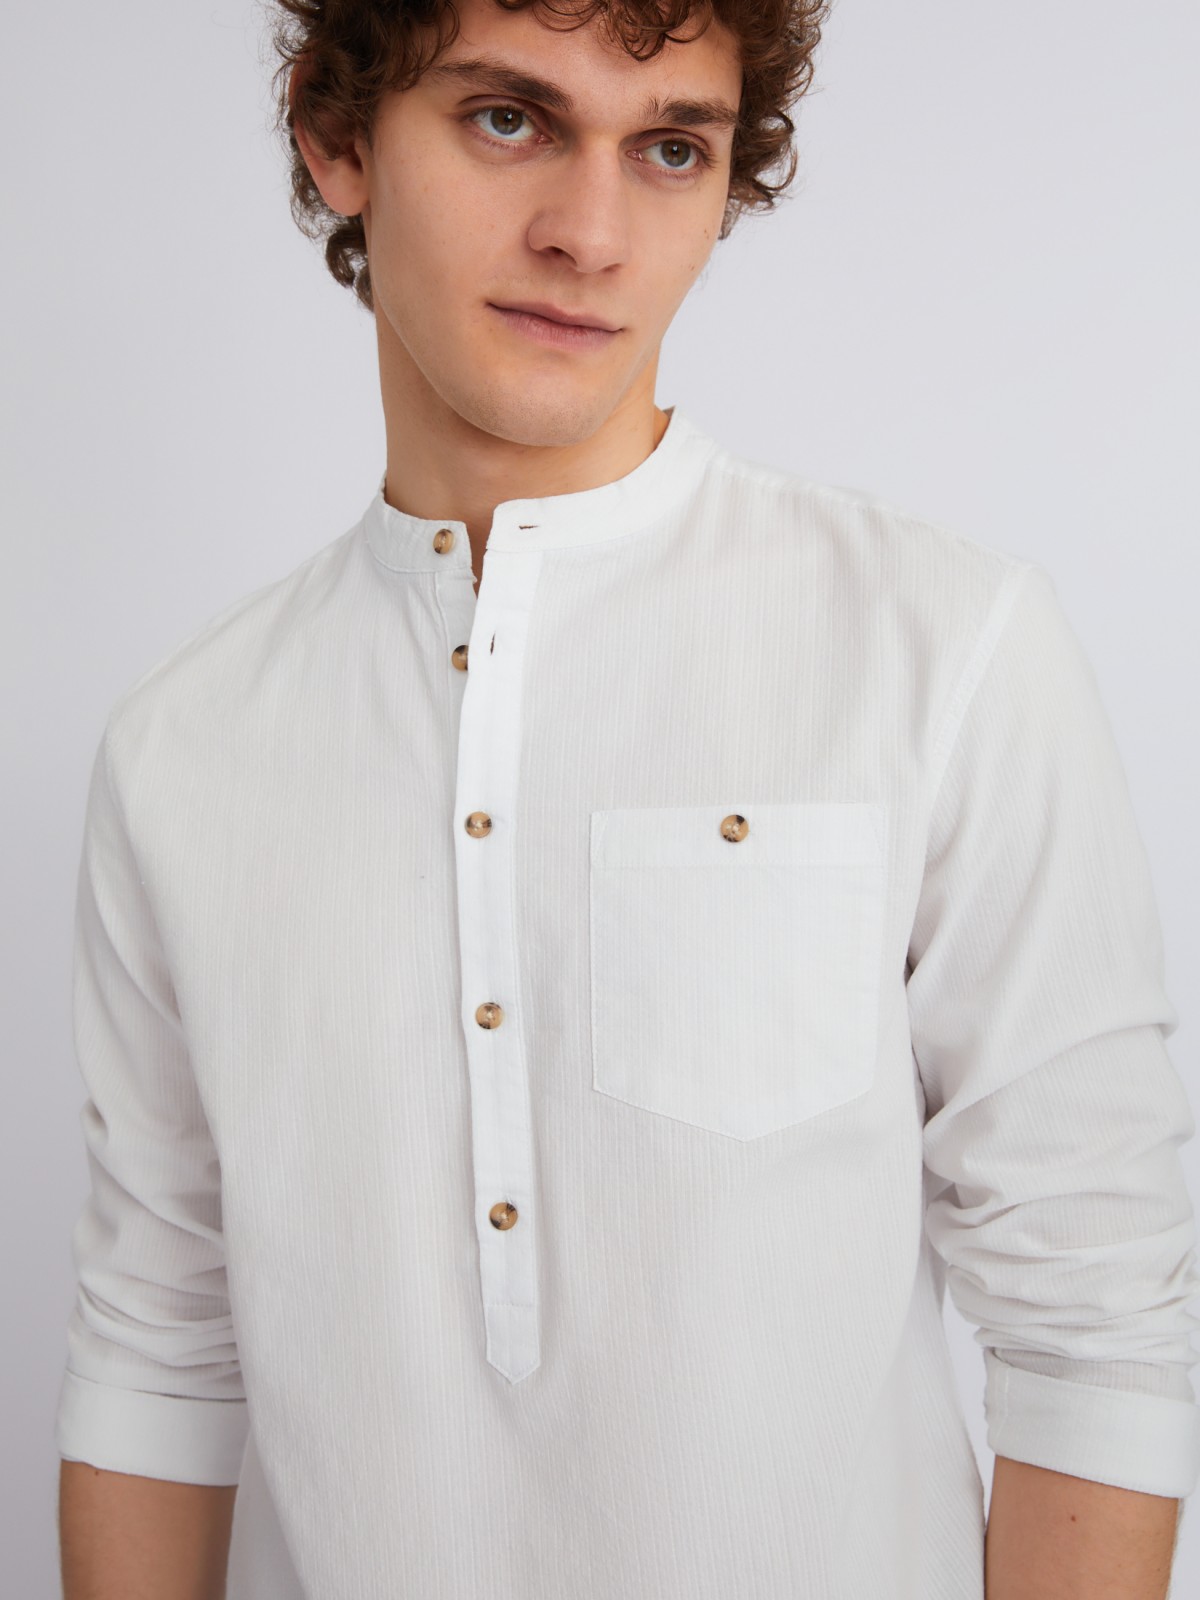 Рубашка из хлопка с длинным рукавом zolla 013232162023, цвет белый, размер S - фото 4